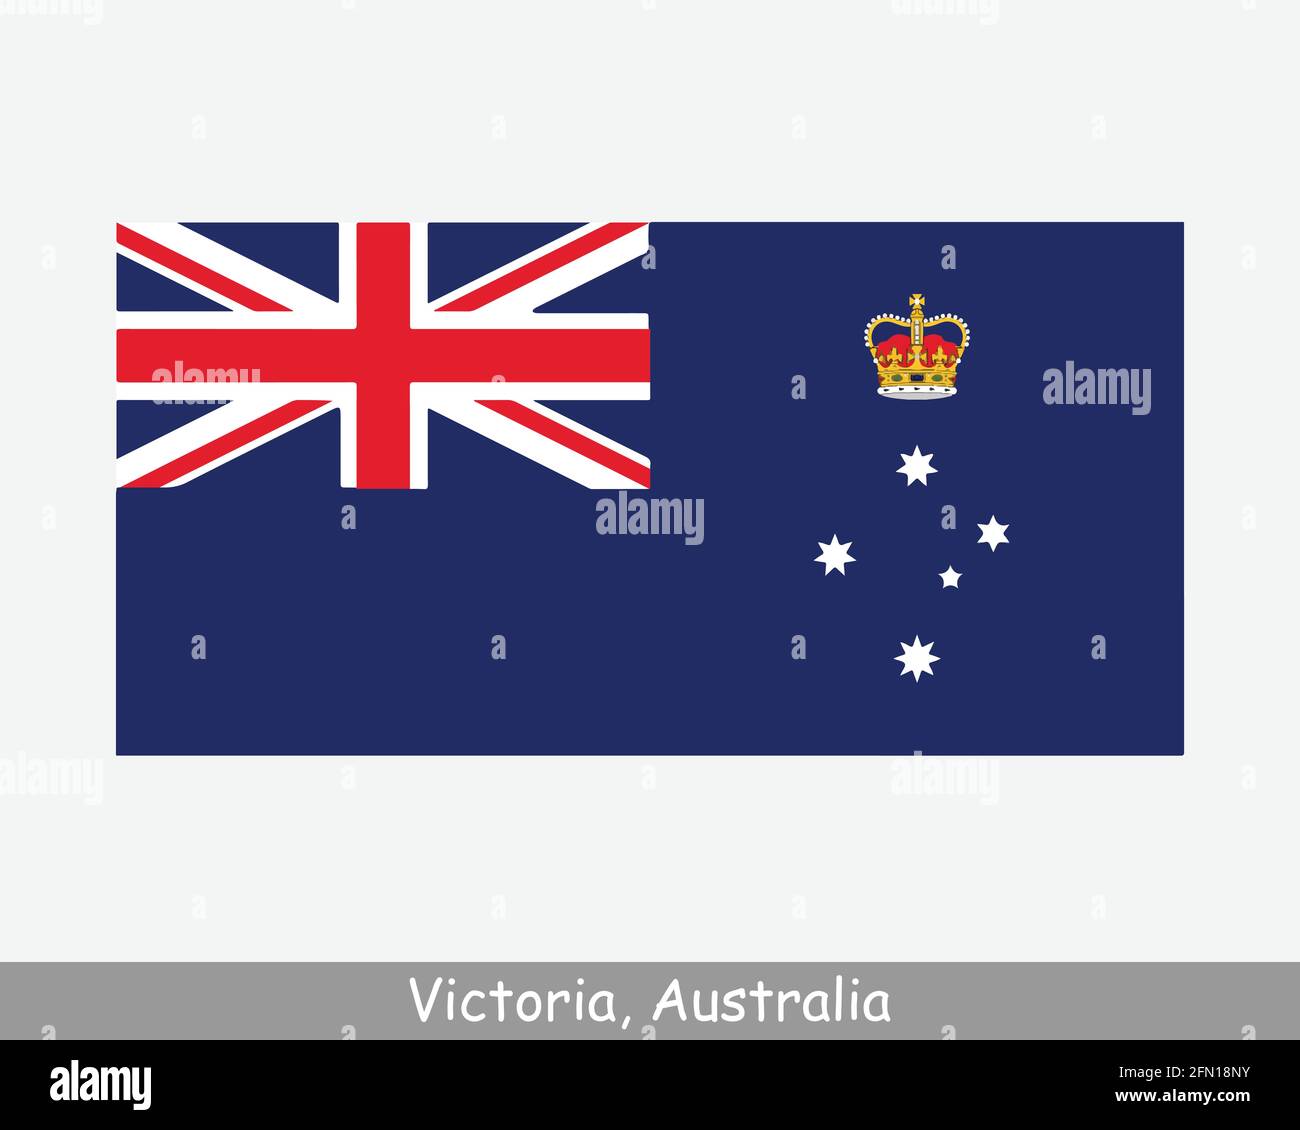 Victoria Australien Flagge. Flagge von Vic, AU. Australisches Staatsbanner. EPS-Vektorgrafik-Datei Stock Vektor